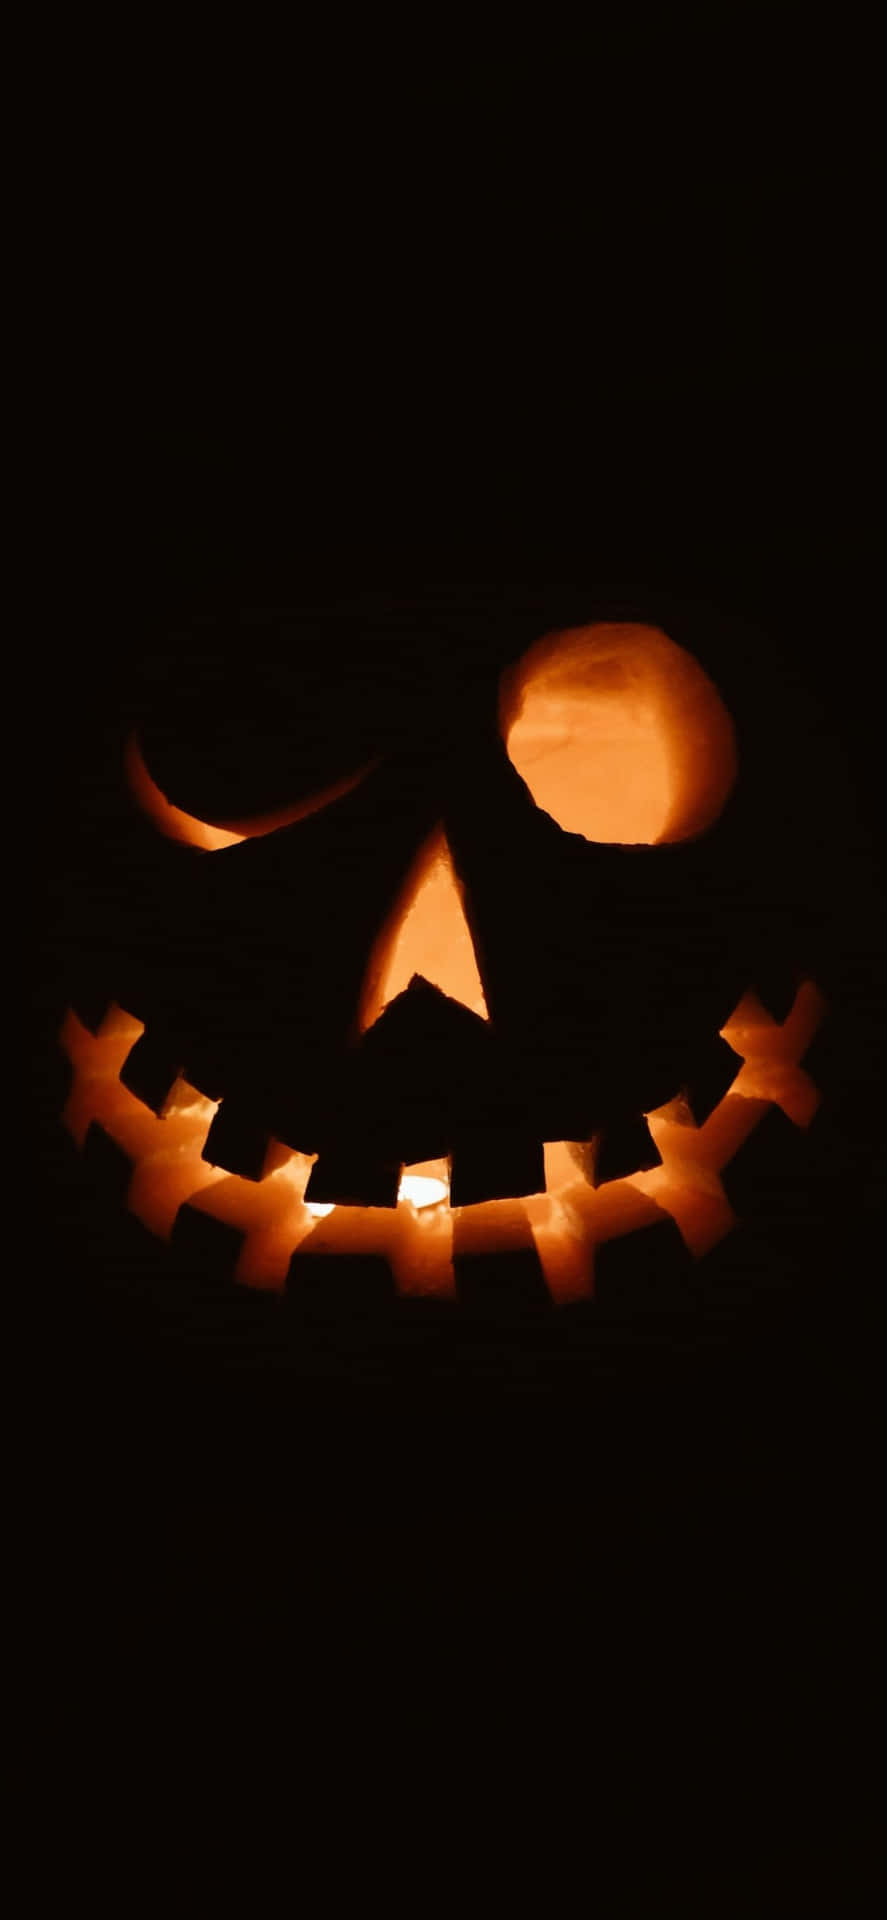 Werdedieses Halloween Festlich Mit Einem Individuell Gestalteten Hintergrund Auf Deinem Iphone.